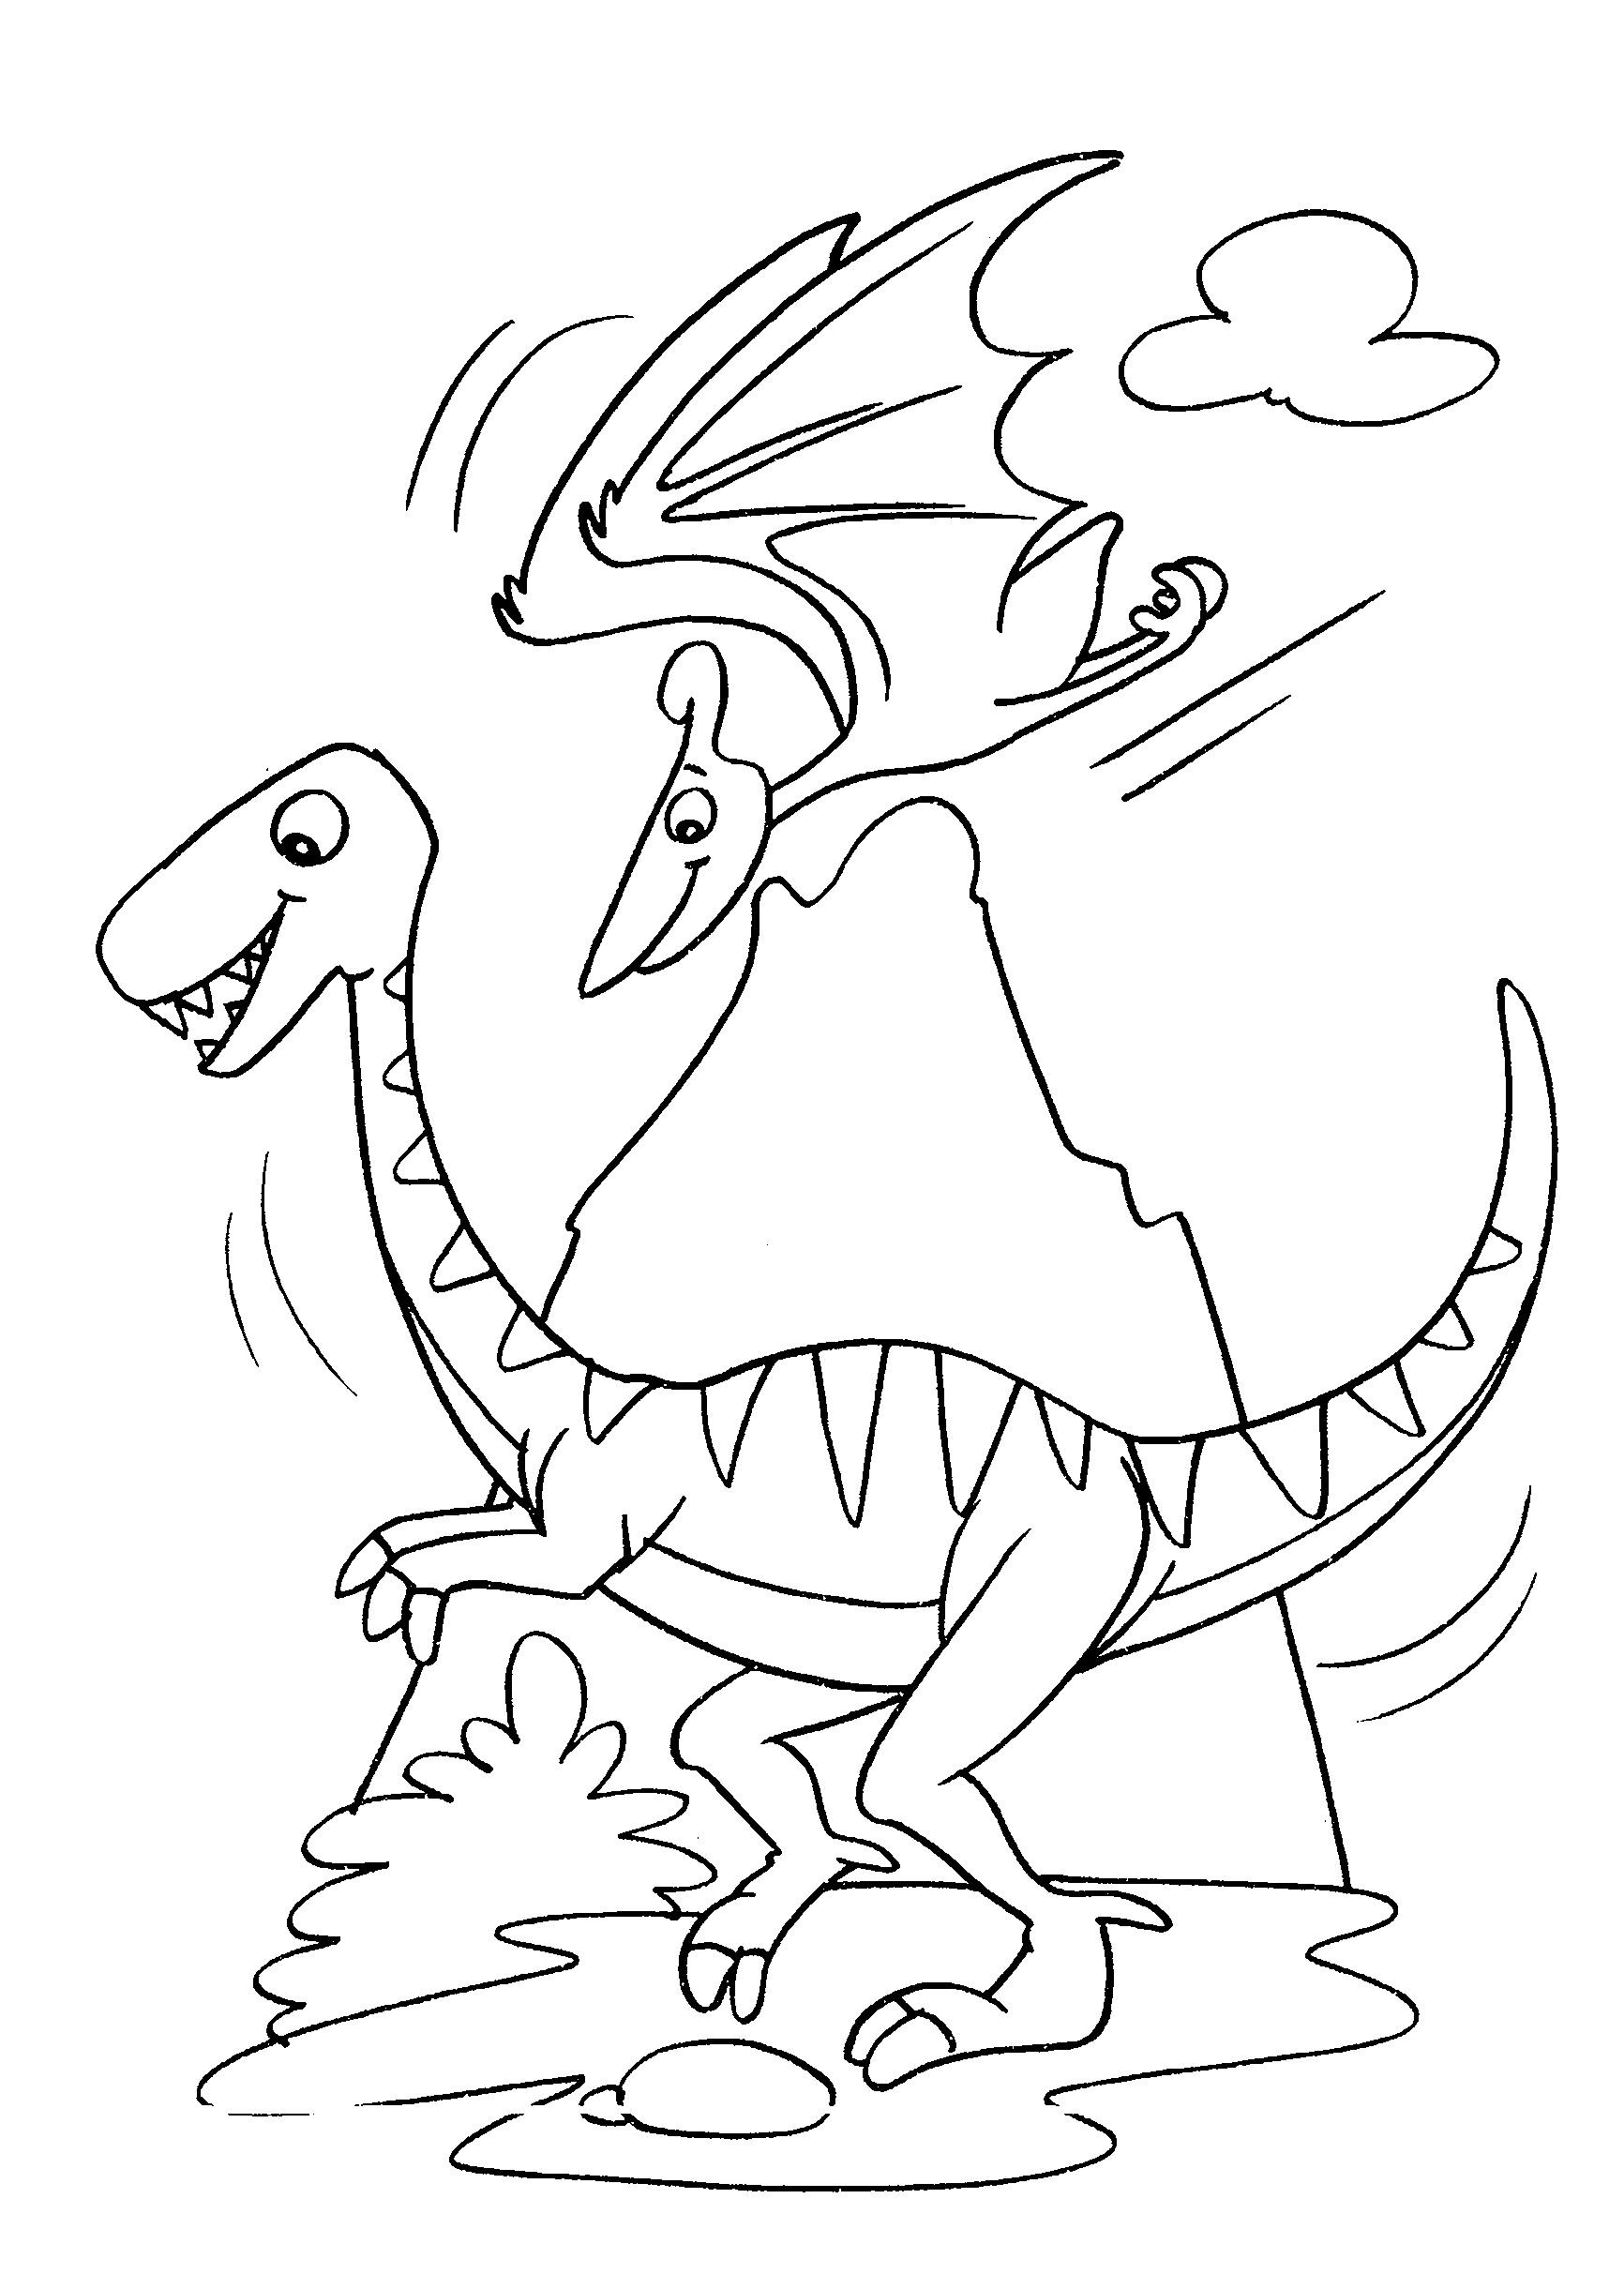 Desenho de Dinossauro sendo perseguido